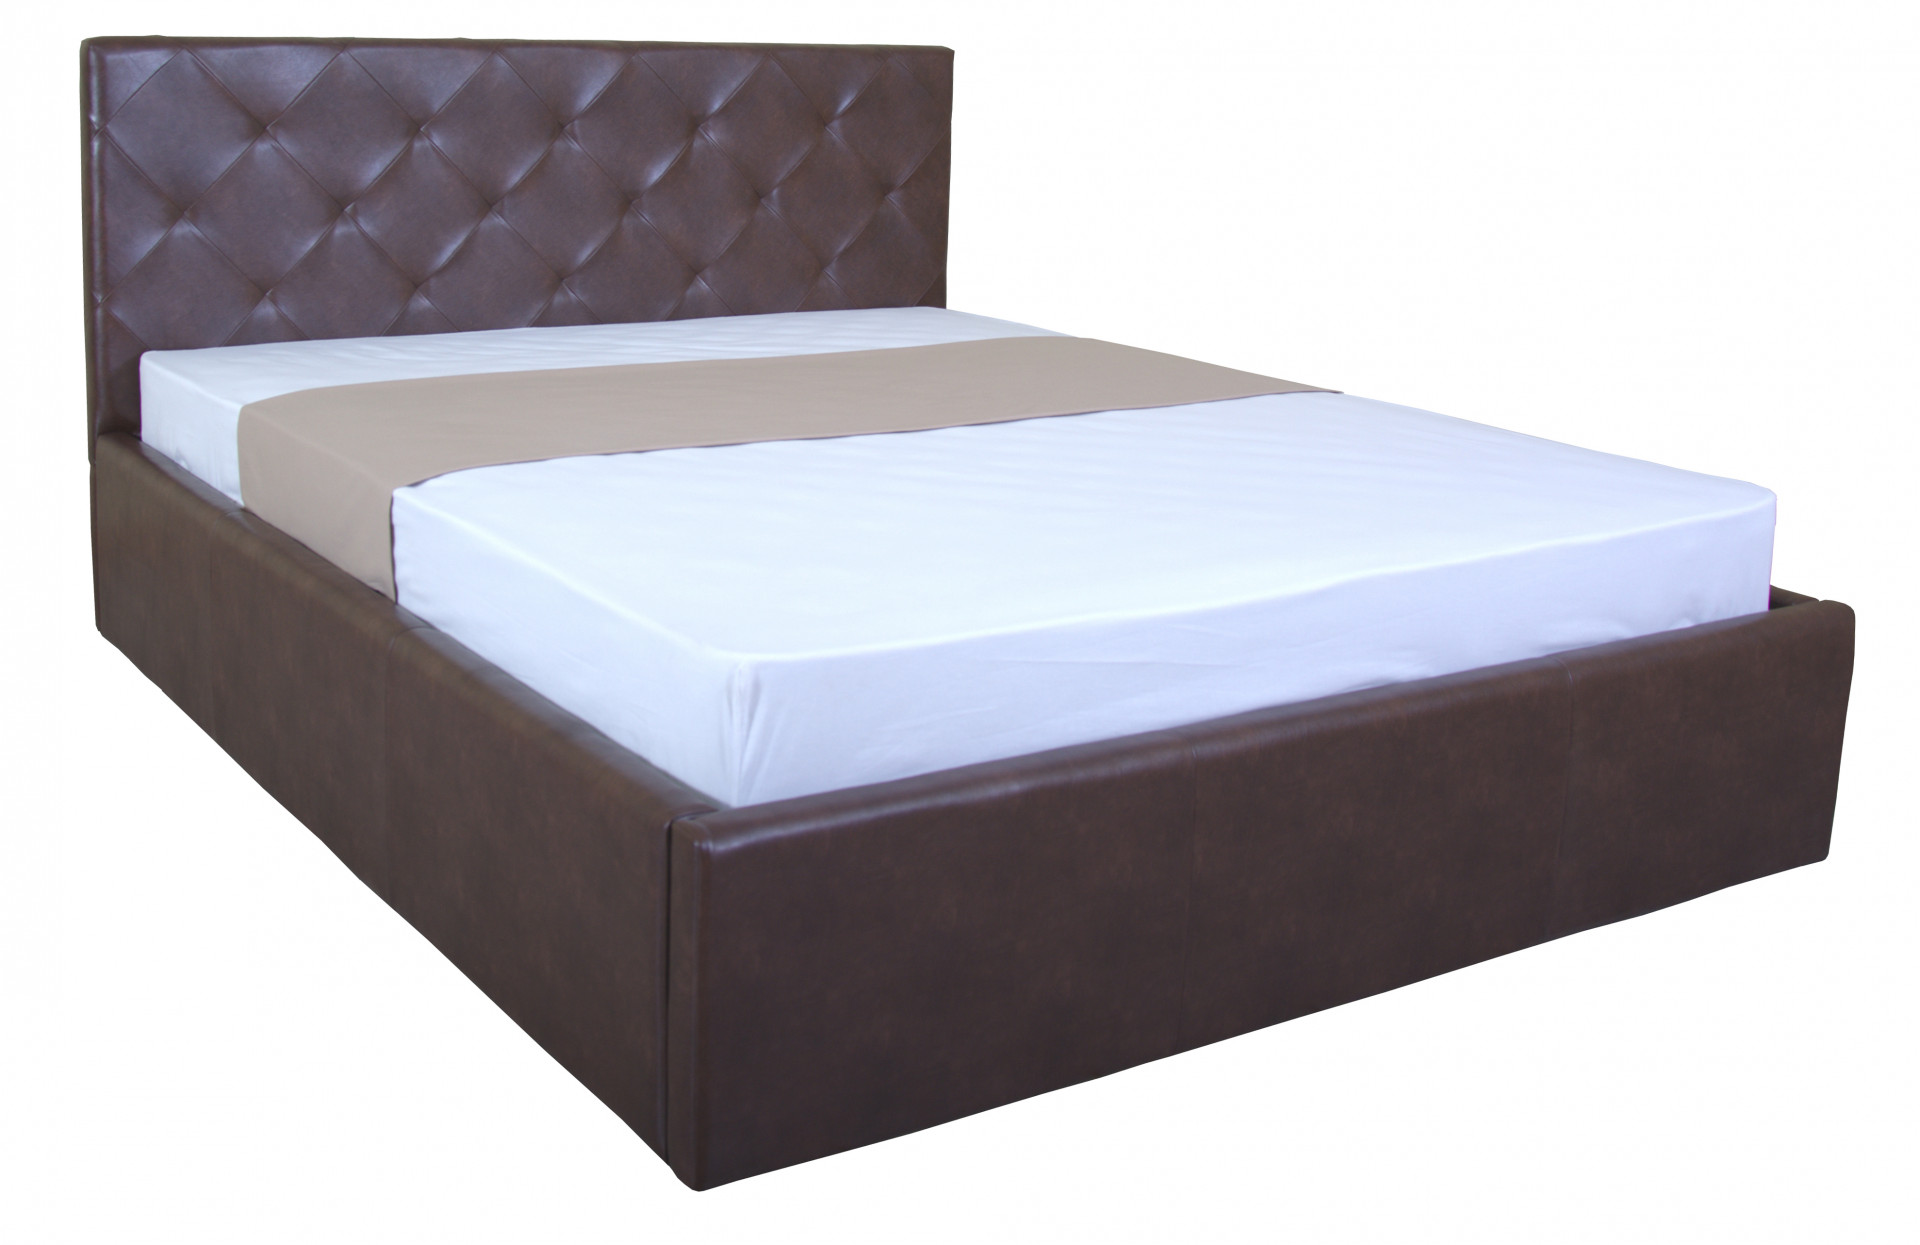 Двуспальная мягкая кровать с подъемным механизмом TPRO- BRIZ lift 1600x2000 brown E2455